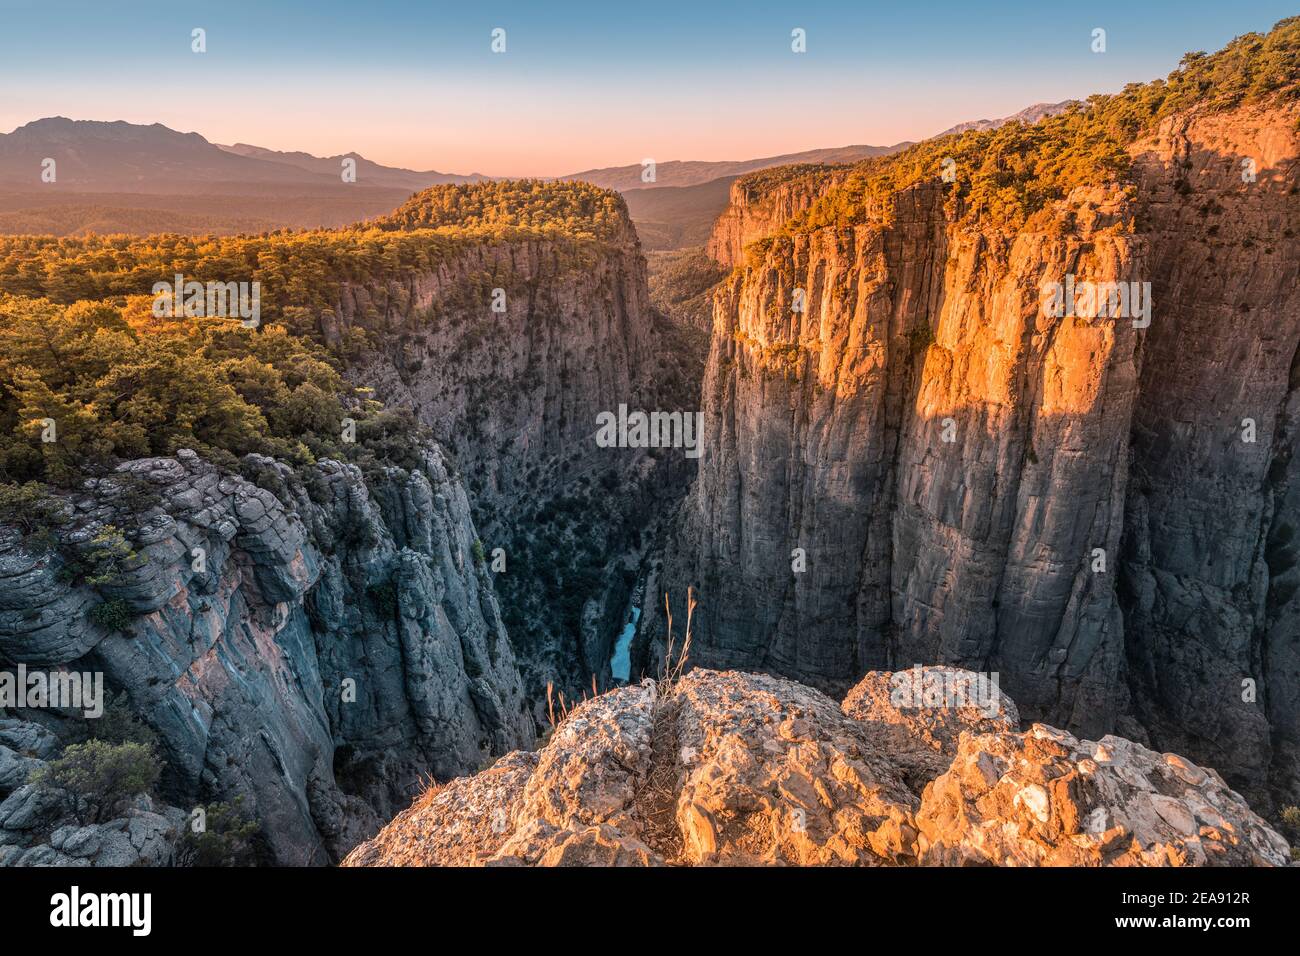 Vista panoramica saturata e contrastante del canyon di Tazi nel Parco naturale di Koprulu in Turchia. Meraviglie naturali e attrazioni turistiche Foto Stock